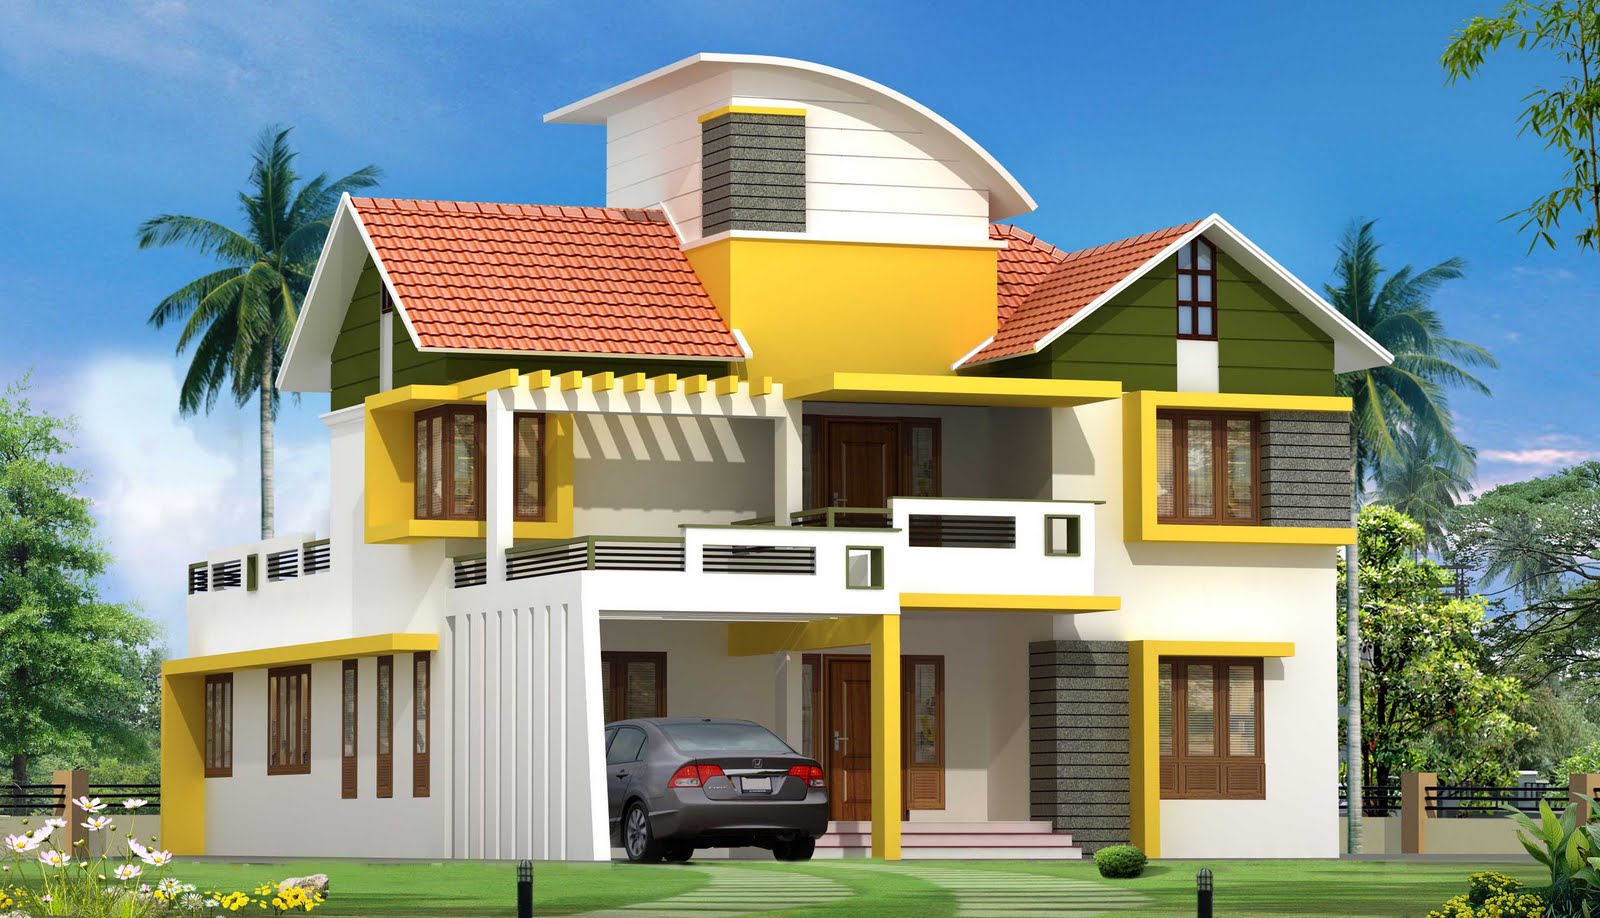 New house plans. Kerala House. Kerala House Design. Современные дома картинки для детей. Керала вилла у моря.